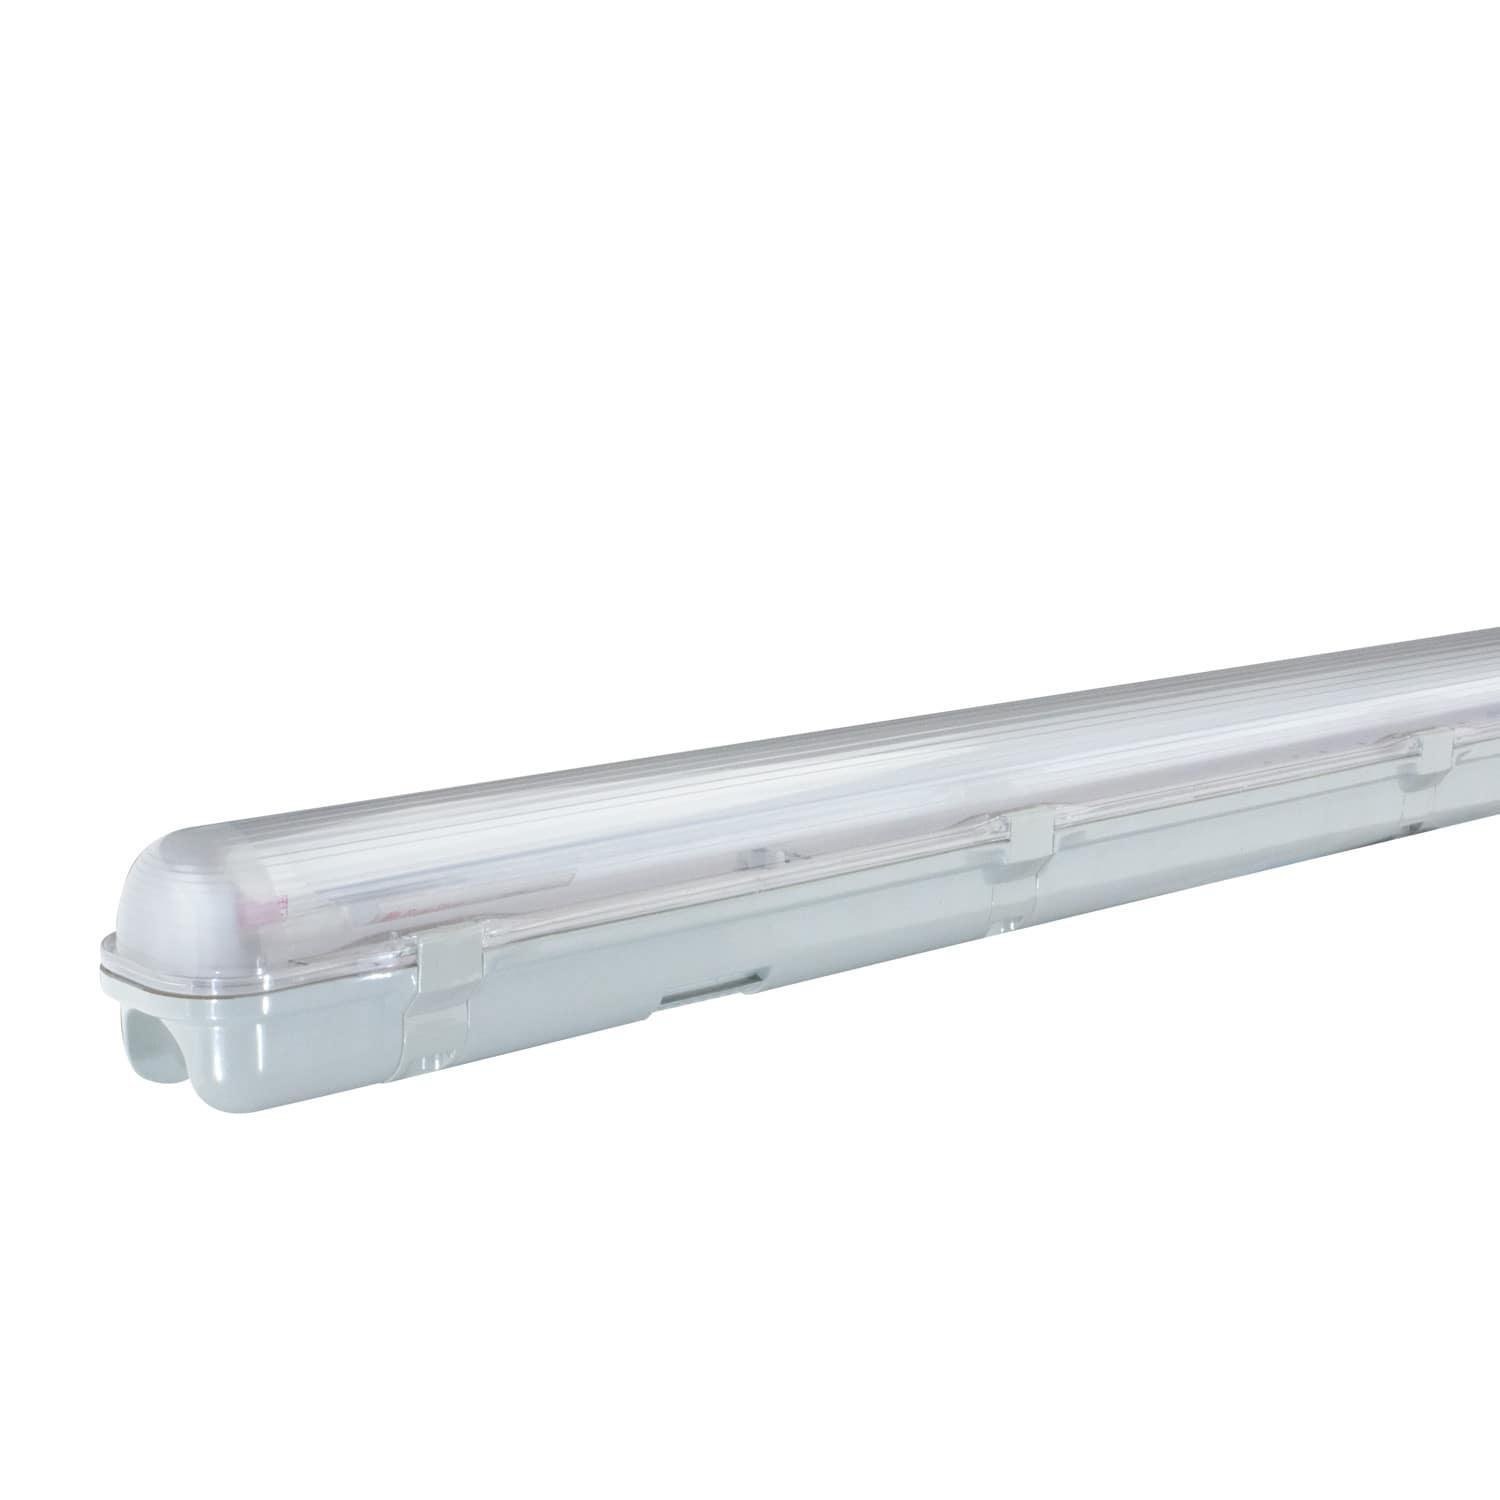 Bộ đèn LED Tuýp chống ẩm T8 L1260 x W80 x H93 Hai Bóng D LN CA01L/18Wx2 (Chống ẩm)